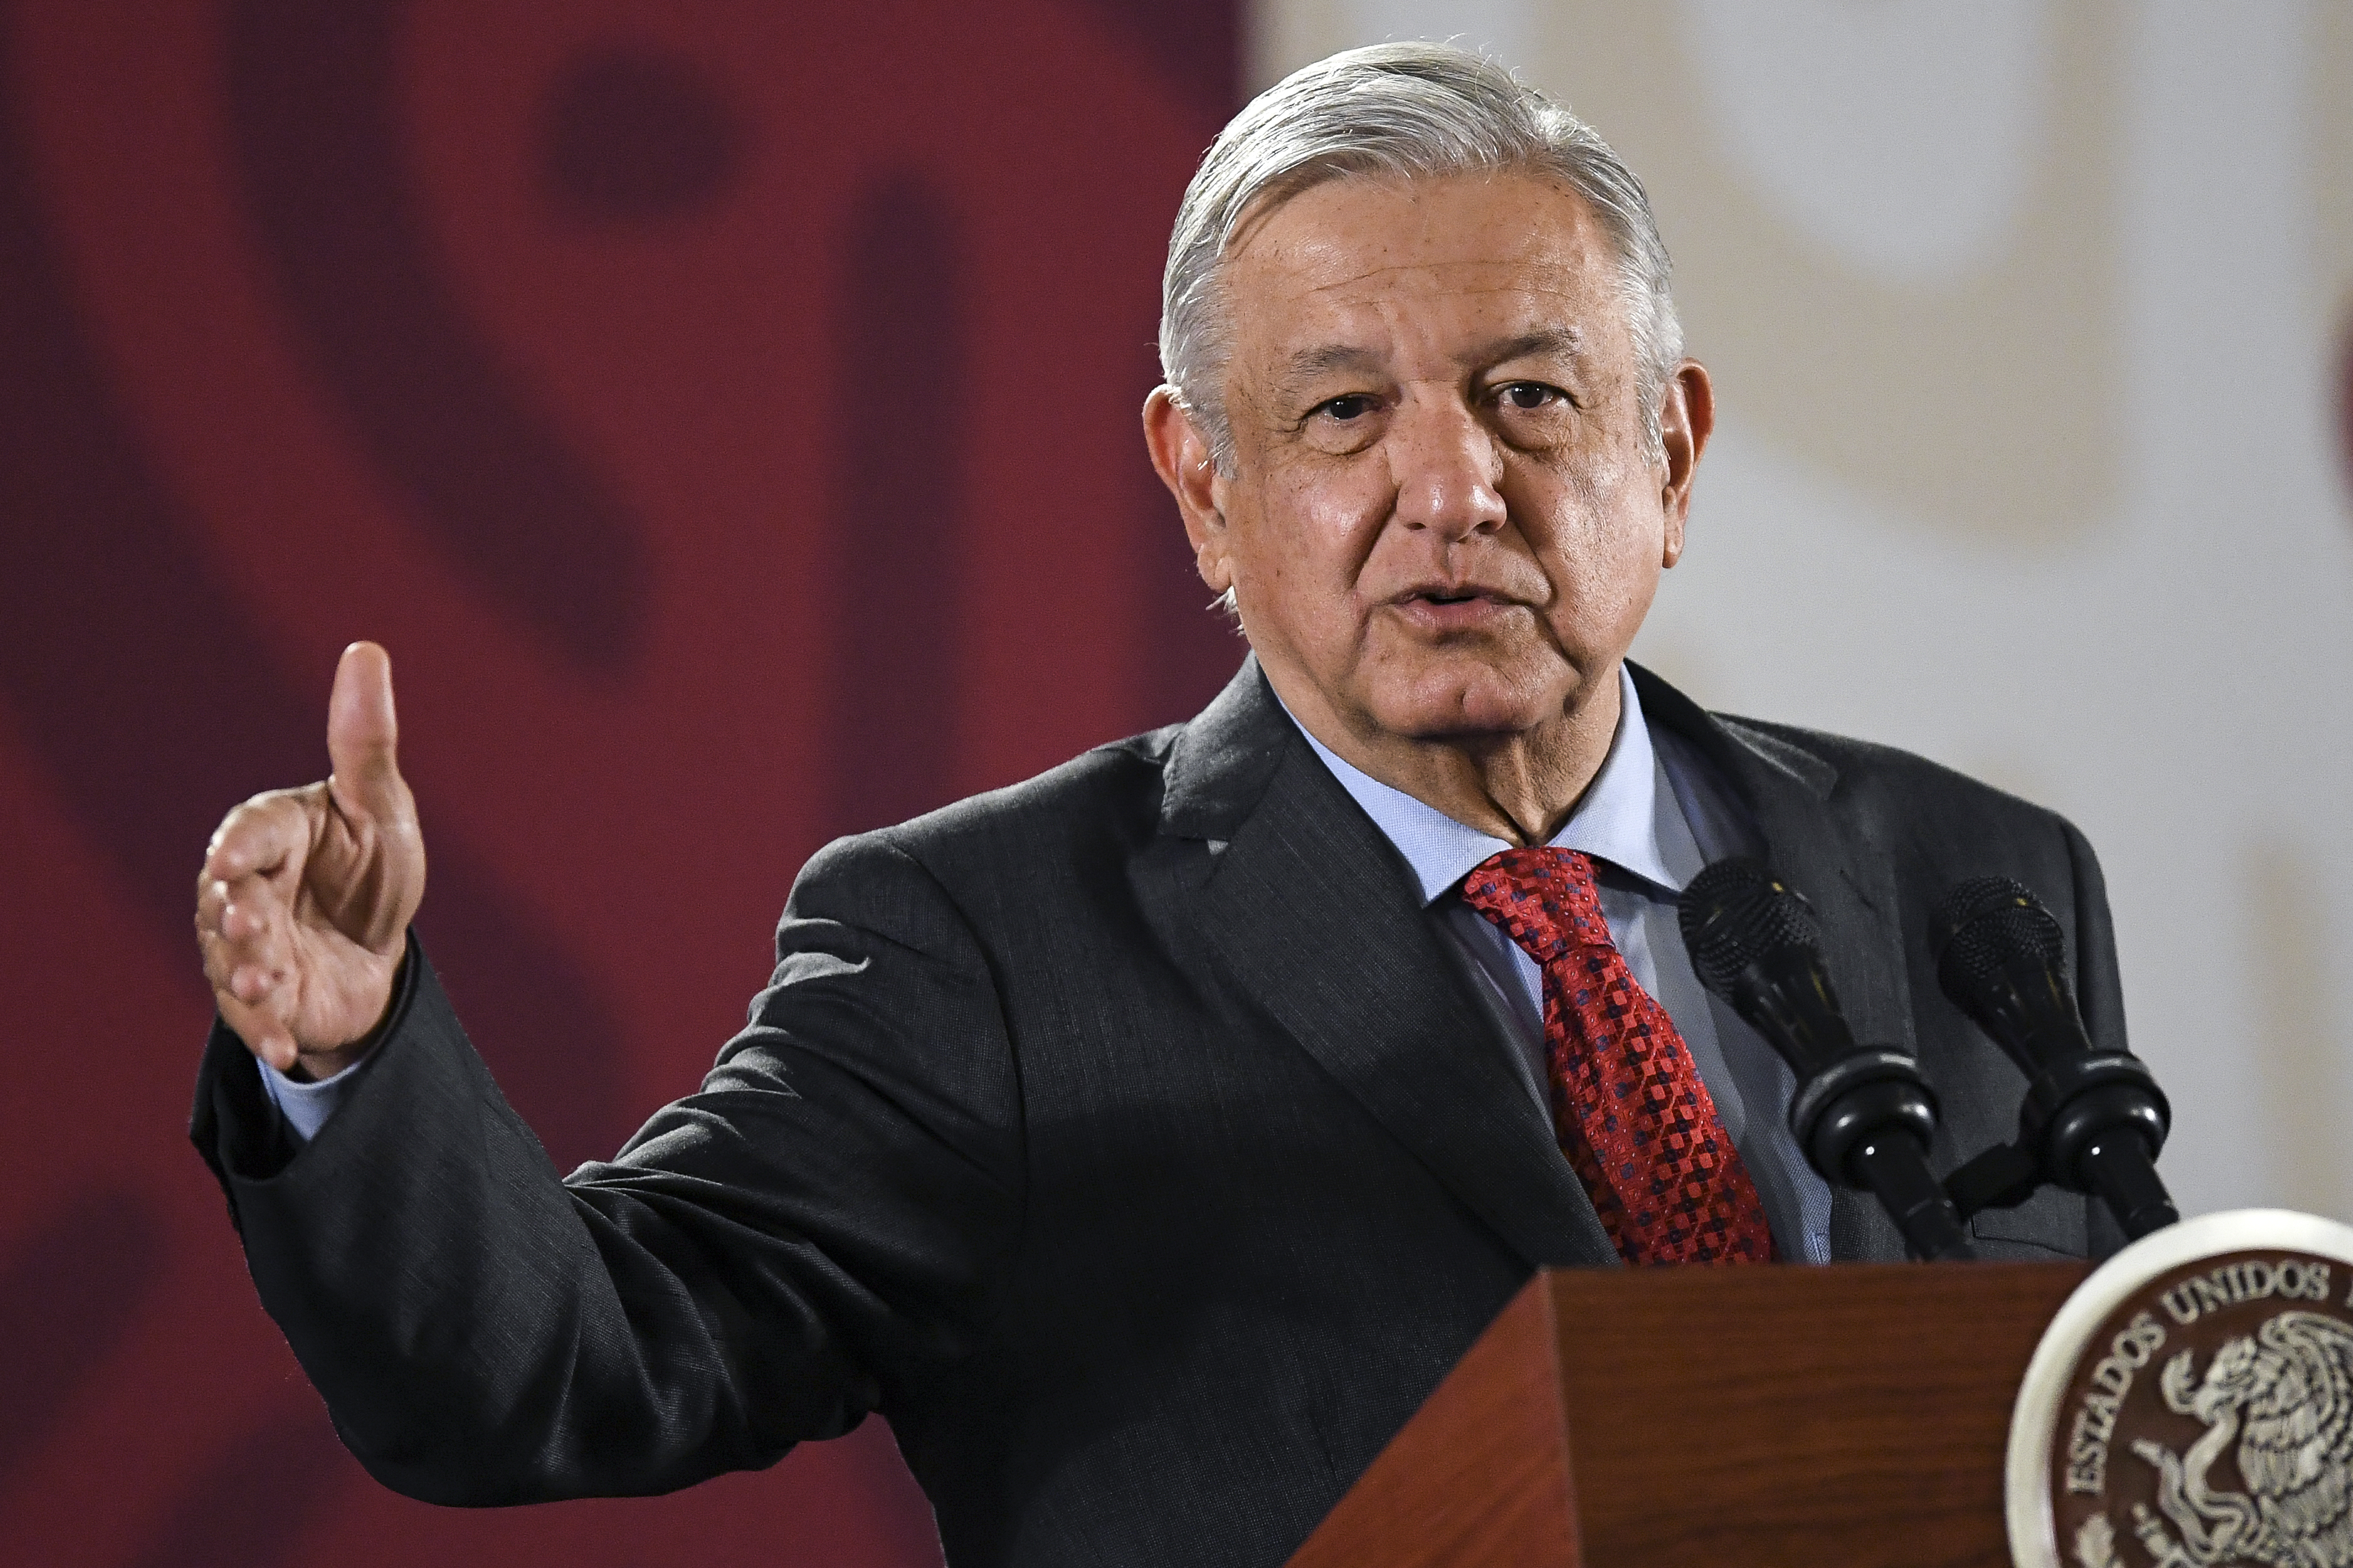 El “humilde” López Obrador compró un estadio por más de 21 millones de dólares